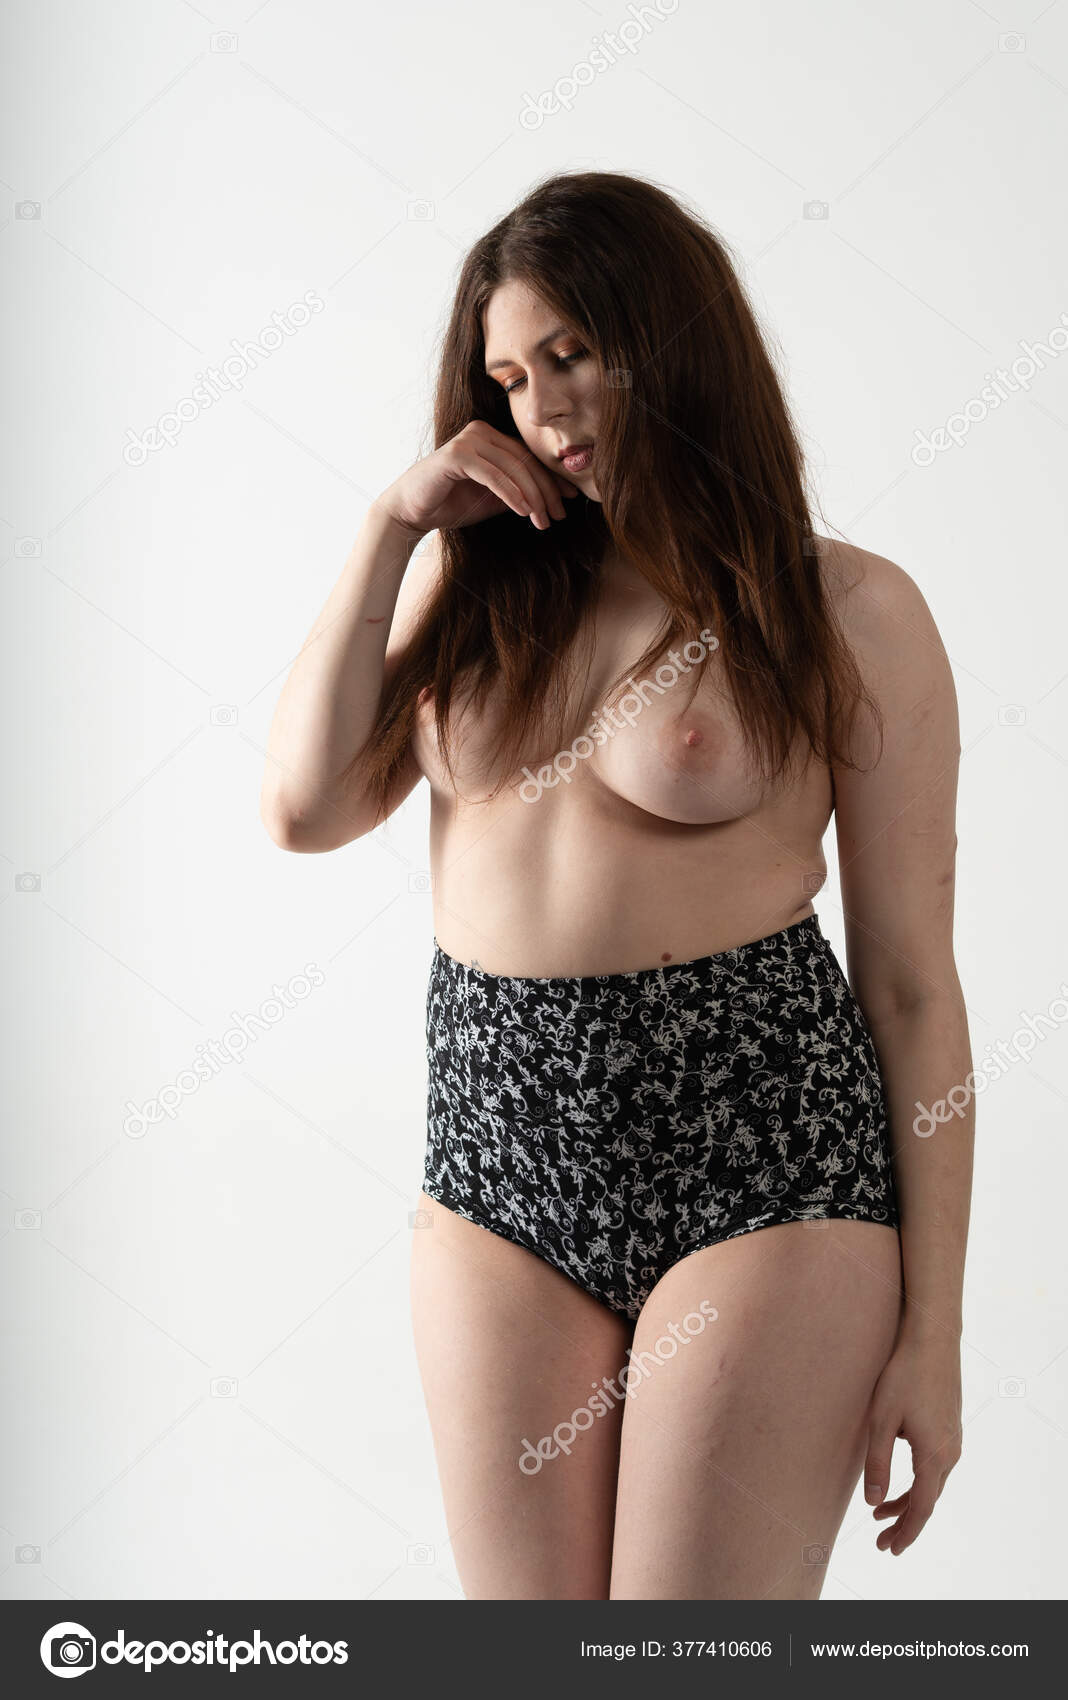 https://st3n.depositphotos.com/10086424/37741/i/1600/depositphotos_377410606-stock-photo-young-beautiful-girl-posing-nude.jpg